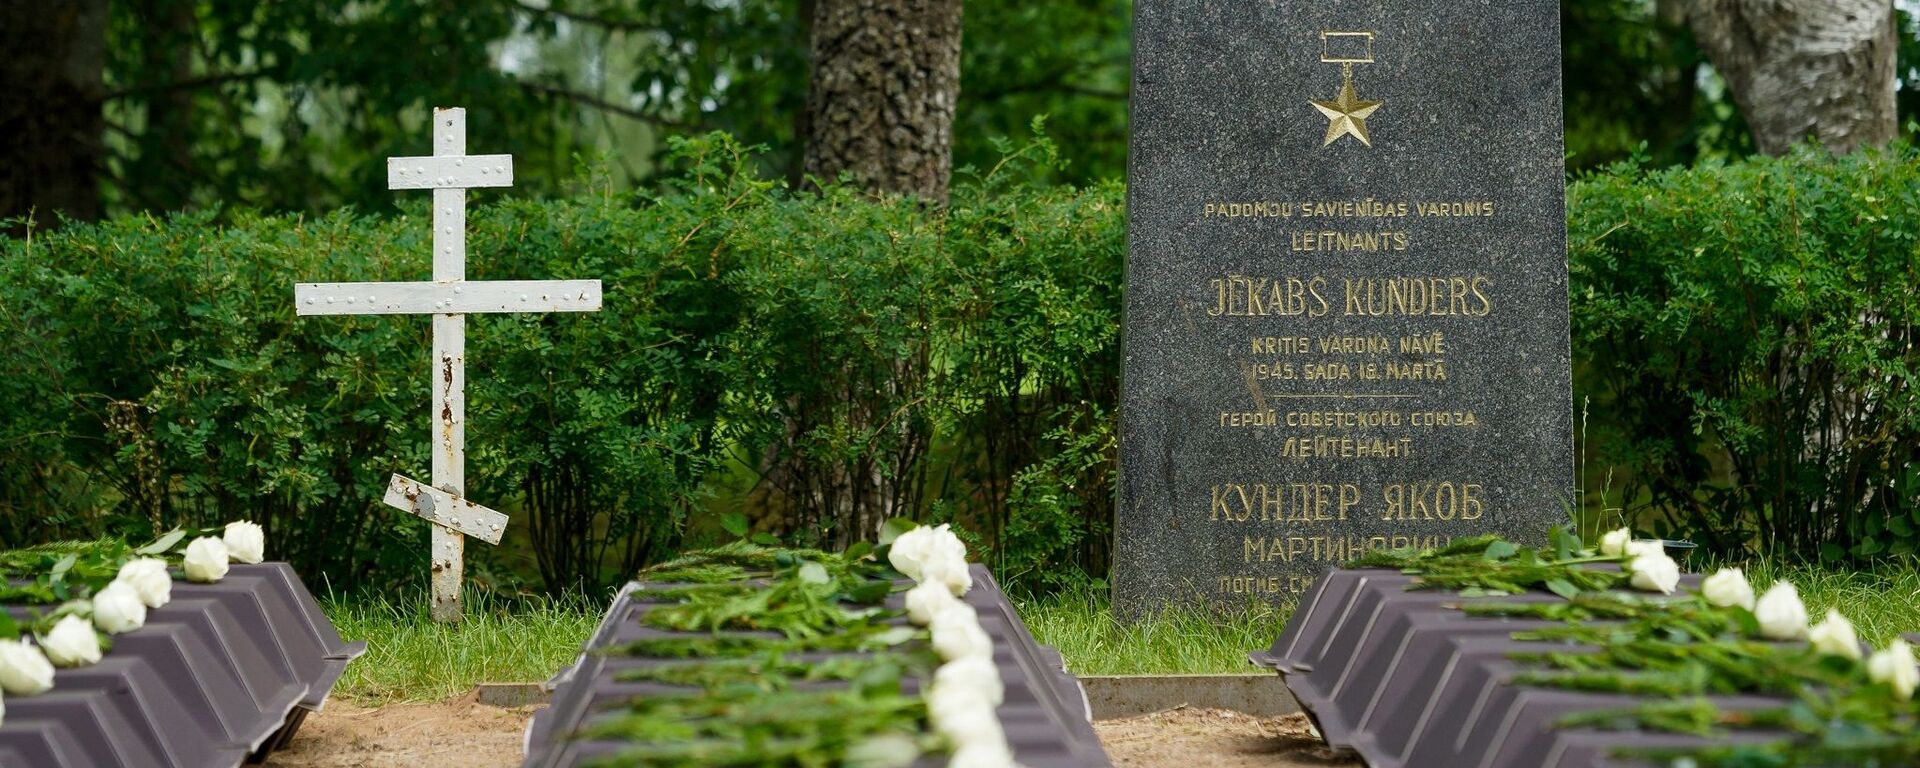 На советском воинском кладбище в Тушки прошла церемония перезахоронения 66 воинов, рядовых и сержантов, погибших от ран в Курляндском котле - Sputnik Латвия, 1920, 21.06.2020